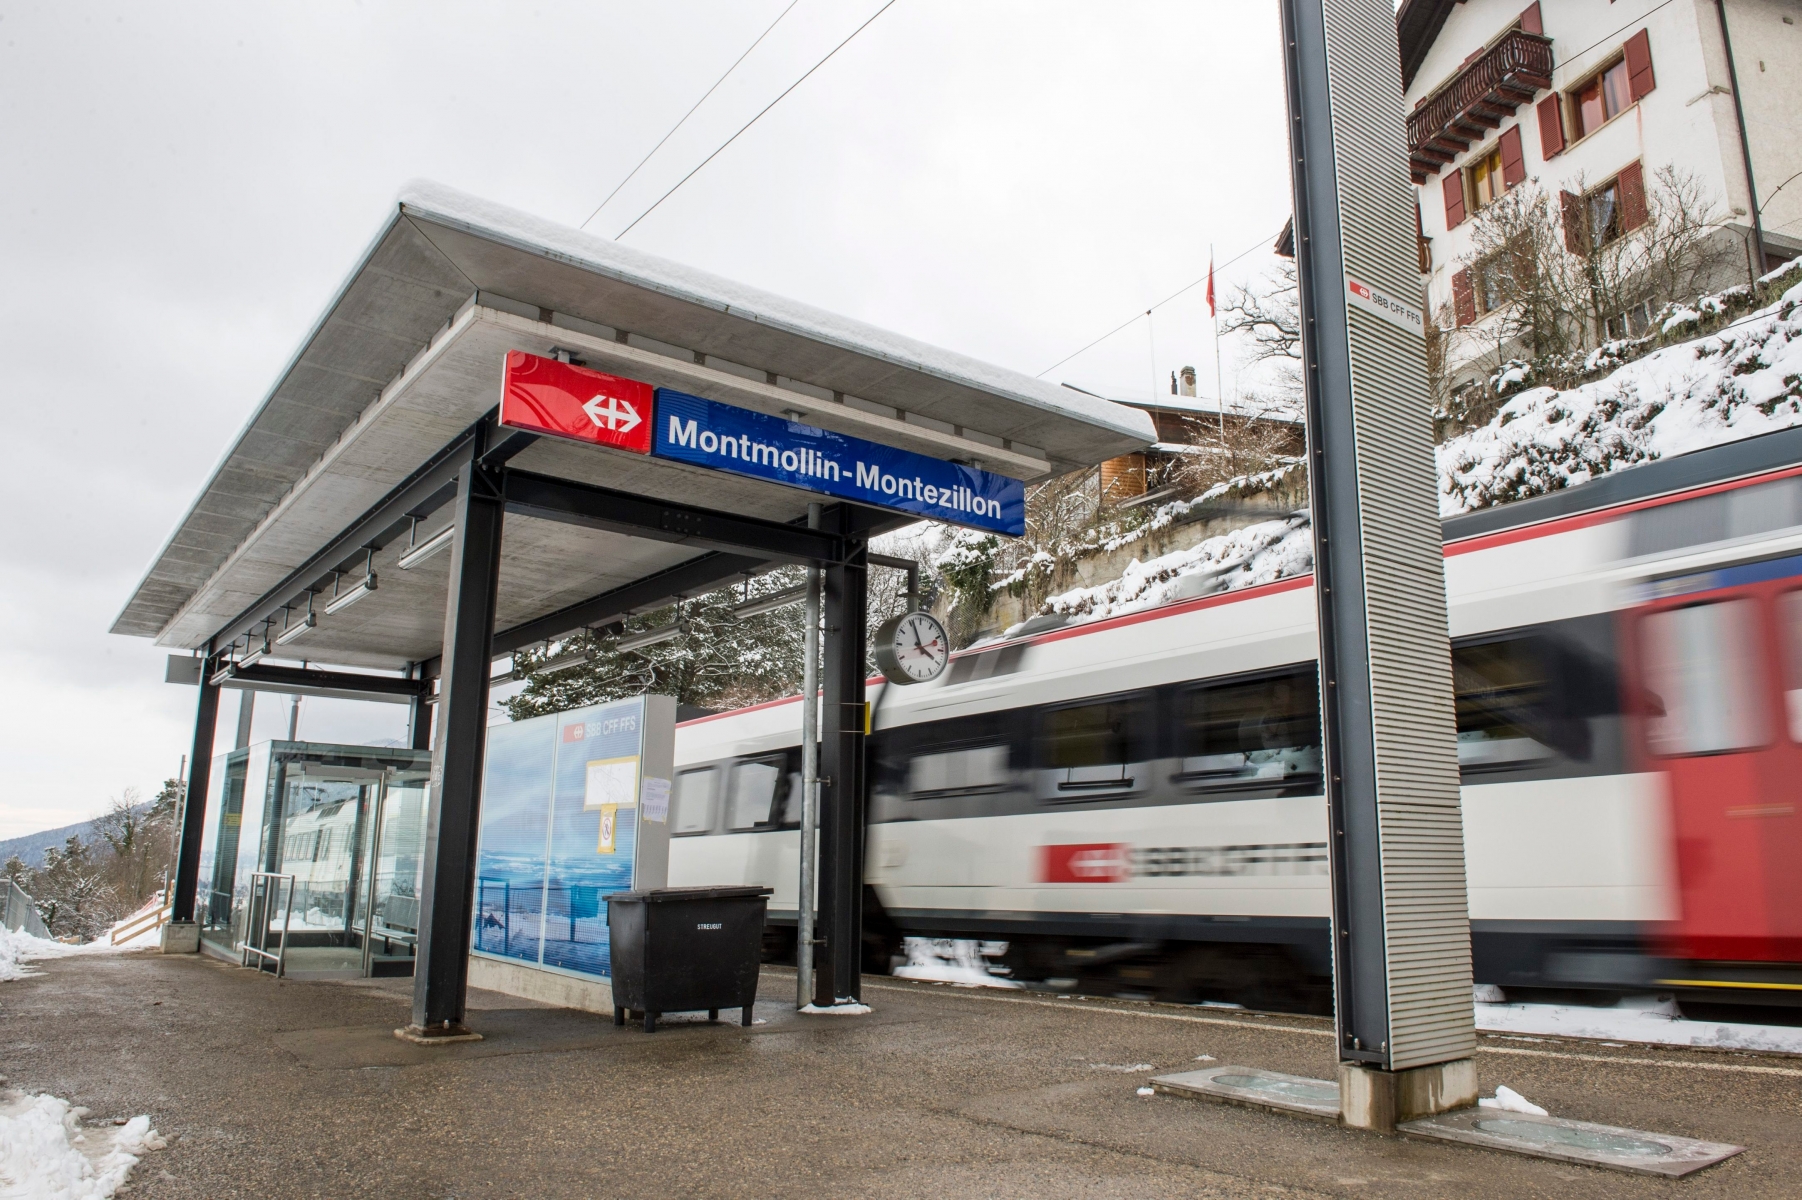 La gare de Montmollin-Montezillon va etre supprimee

Le halte ferroviaire Montmollin - Montezillon



Montezillon, le 27 janvier 2015

Photo: Lucas Vuitel







 ROCHEFORT